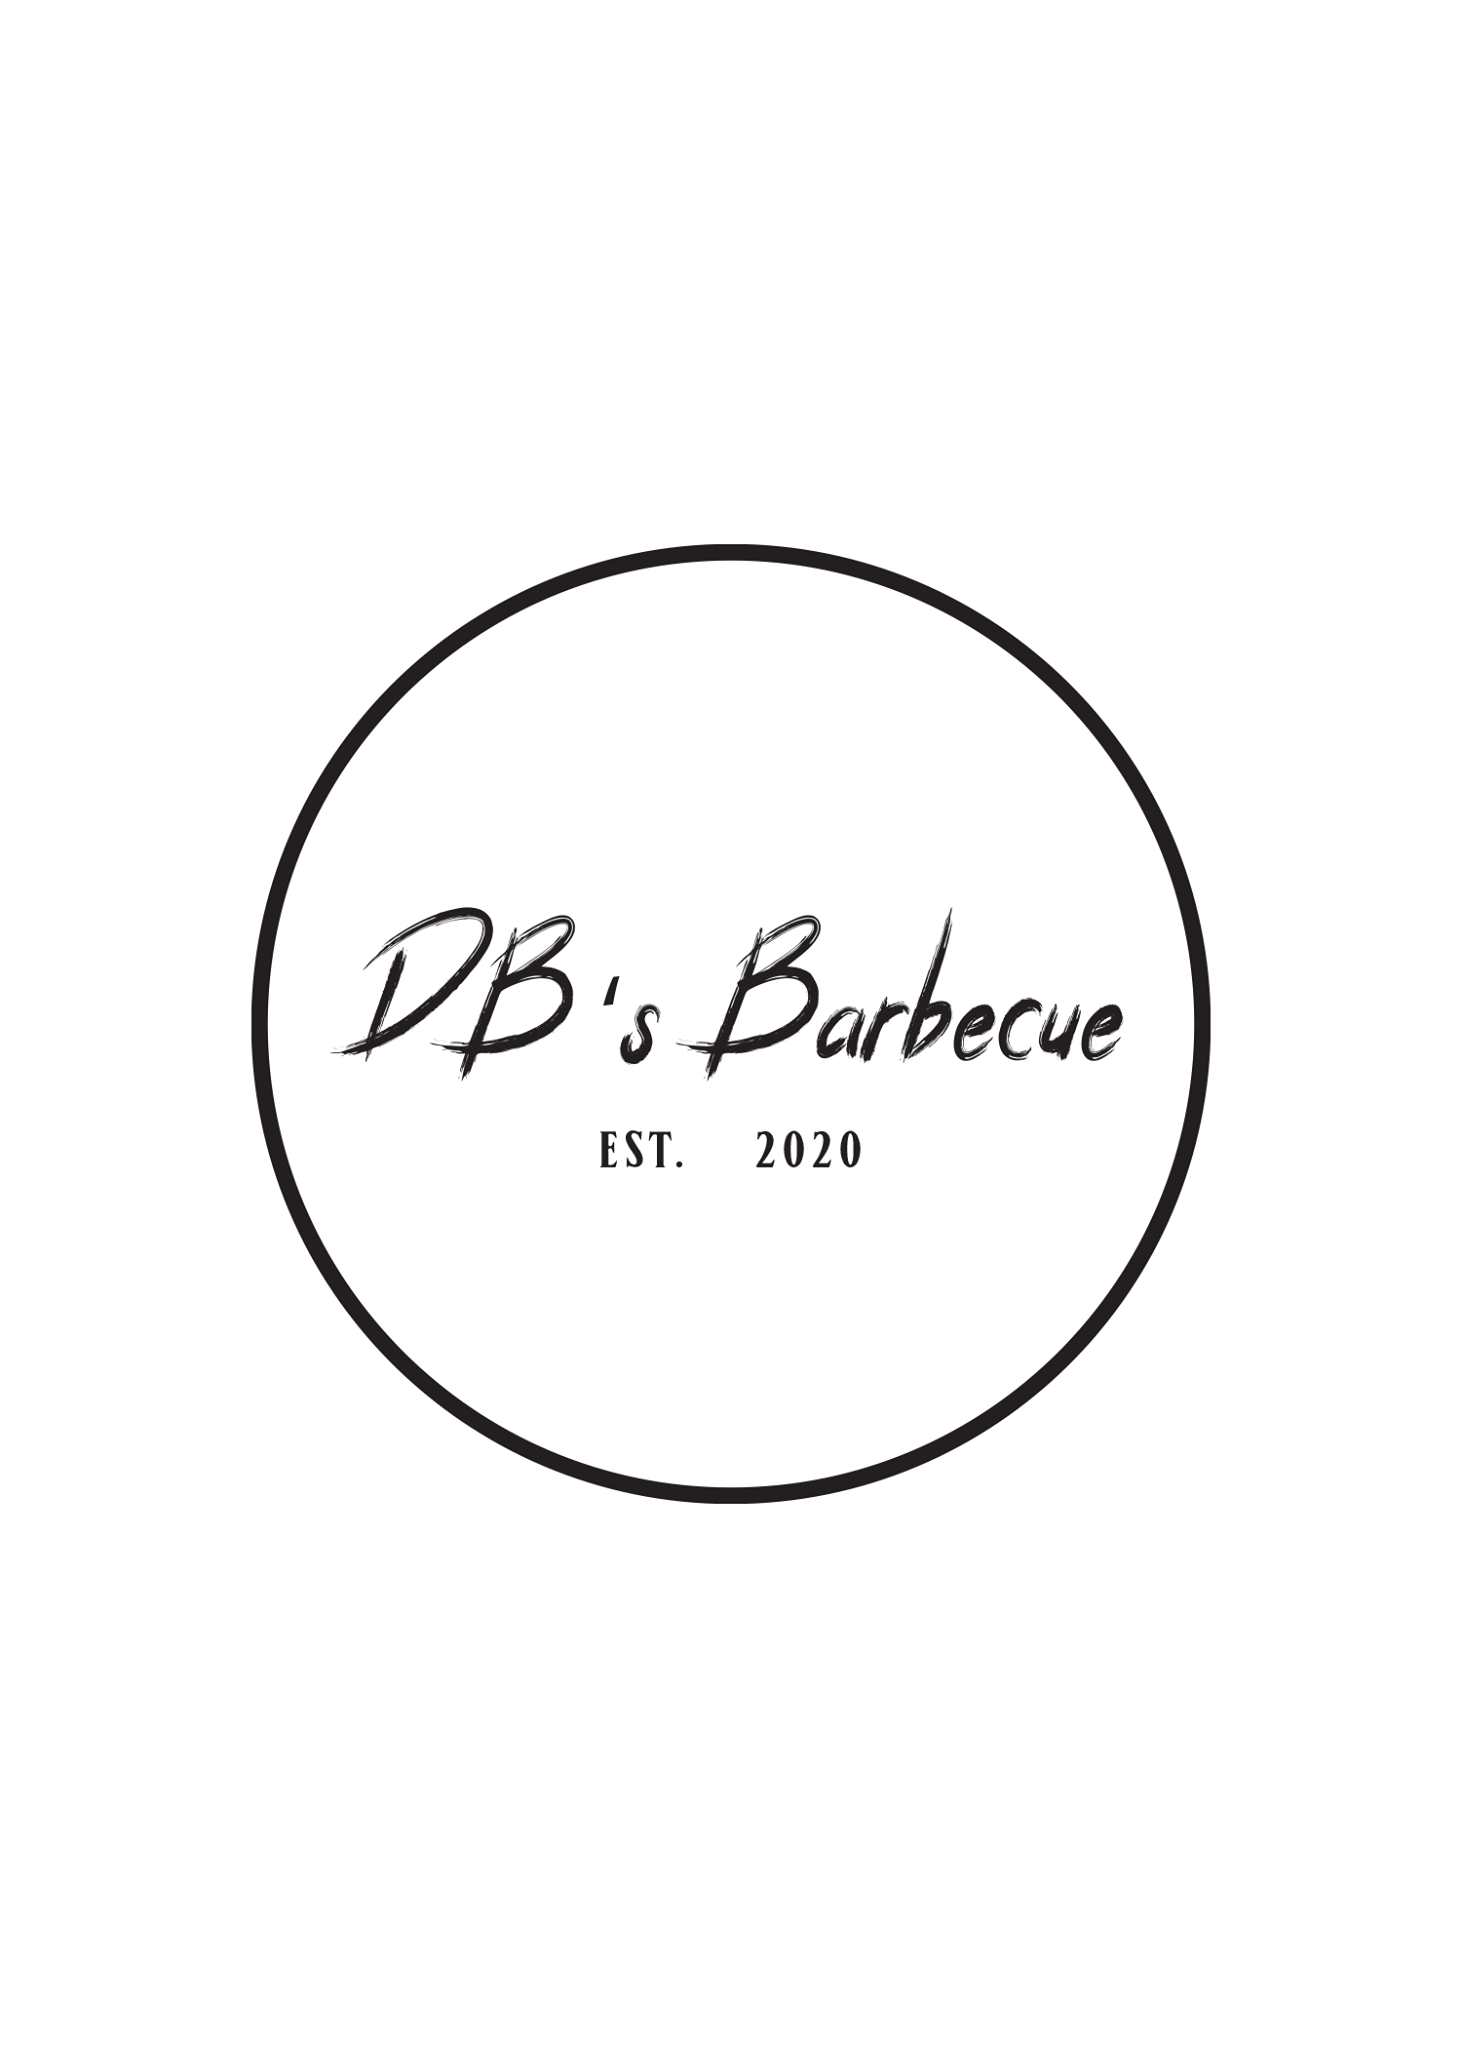 DB's Barbecue